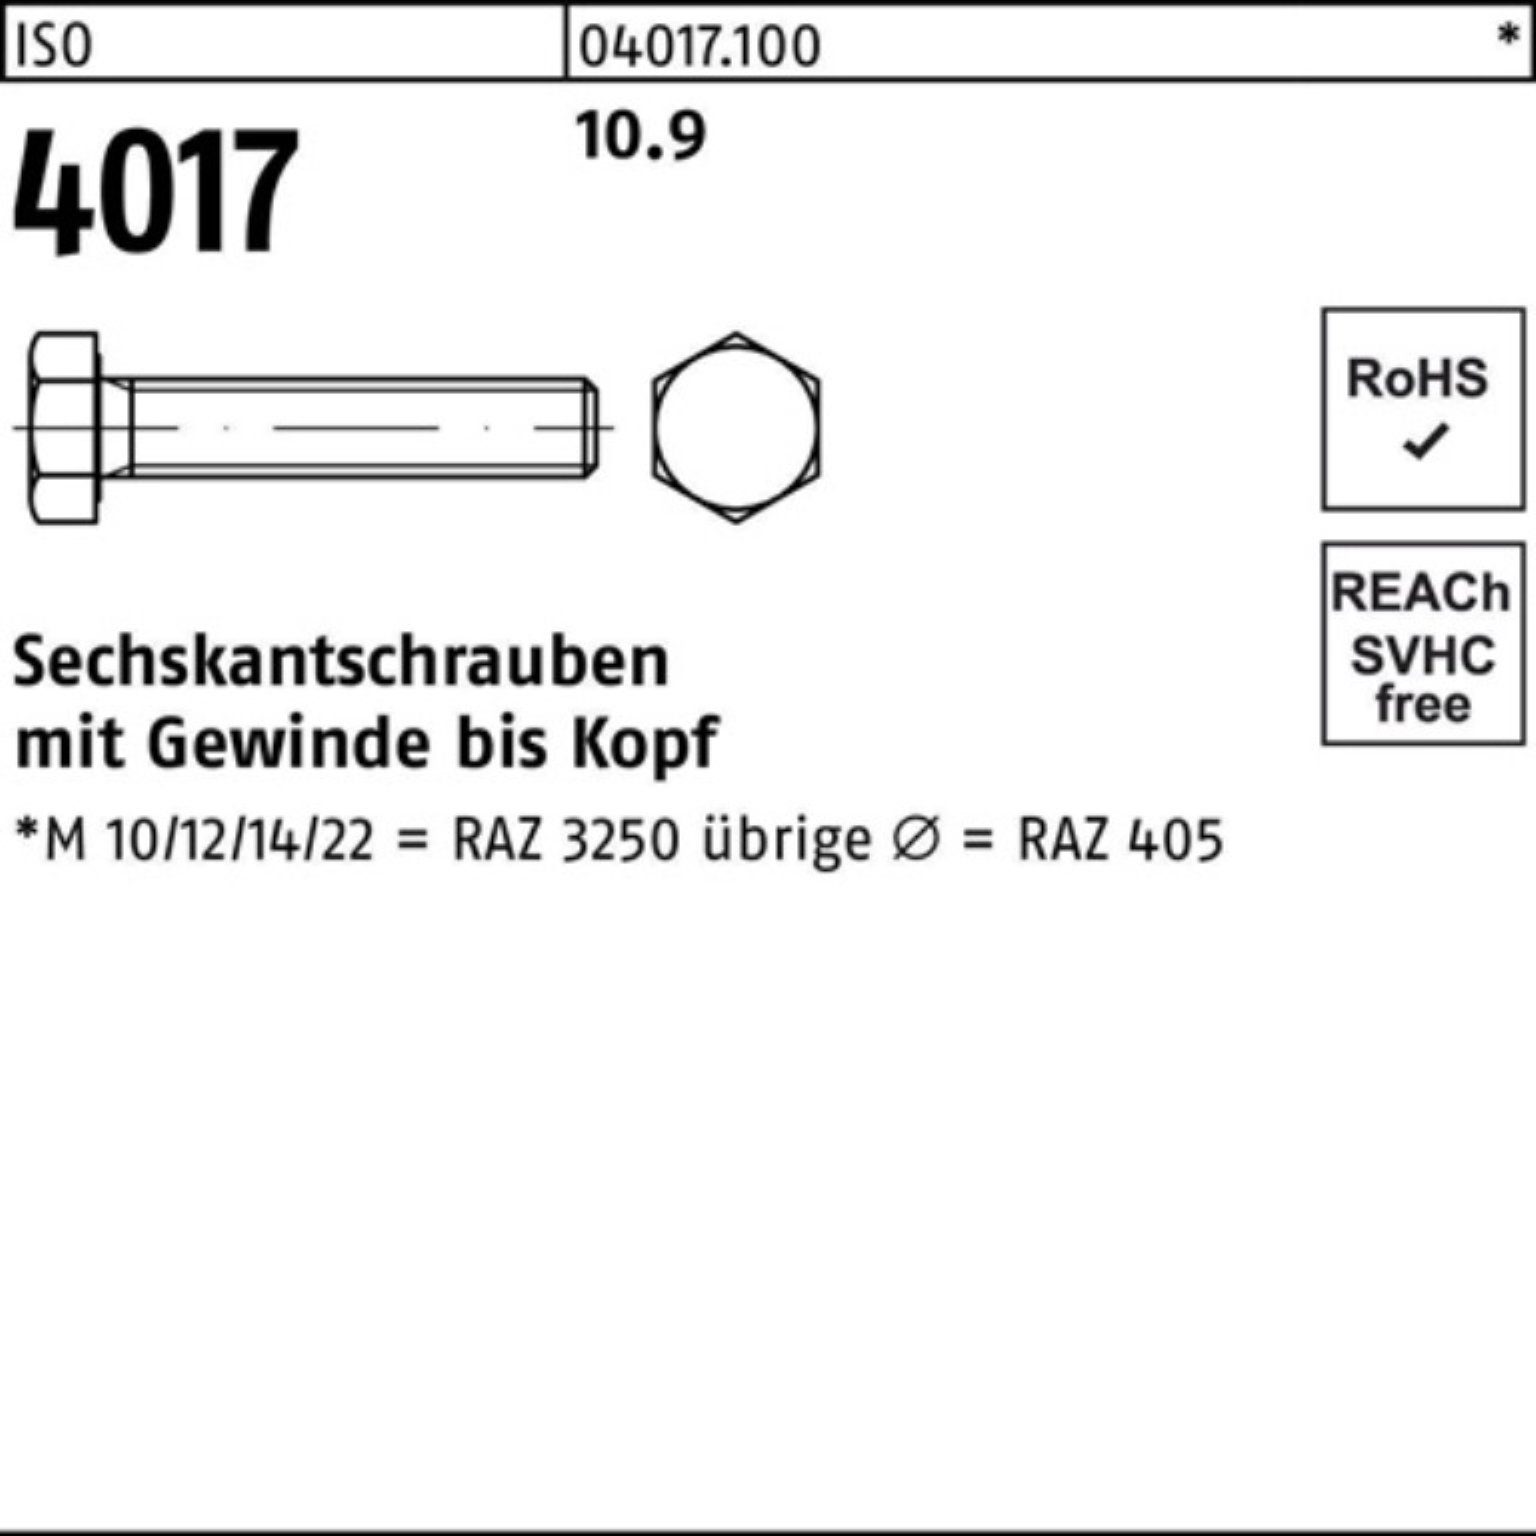 Bufab Sechskantschraube 100er 10.9 Pack 4017 VG Stück M6x 30 ISO 40 100 Sechskantschraube ISO